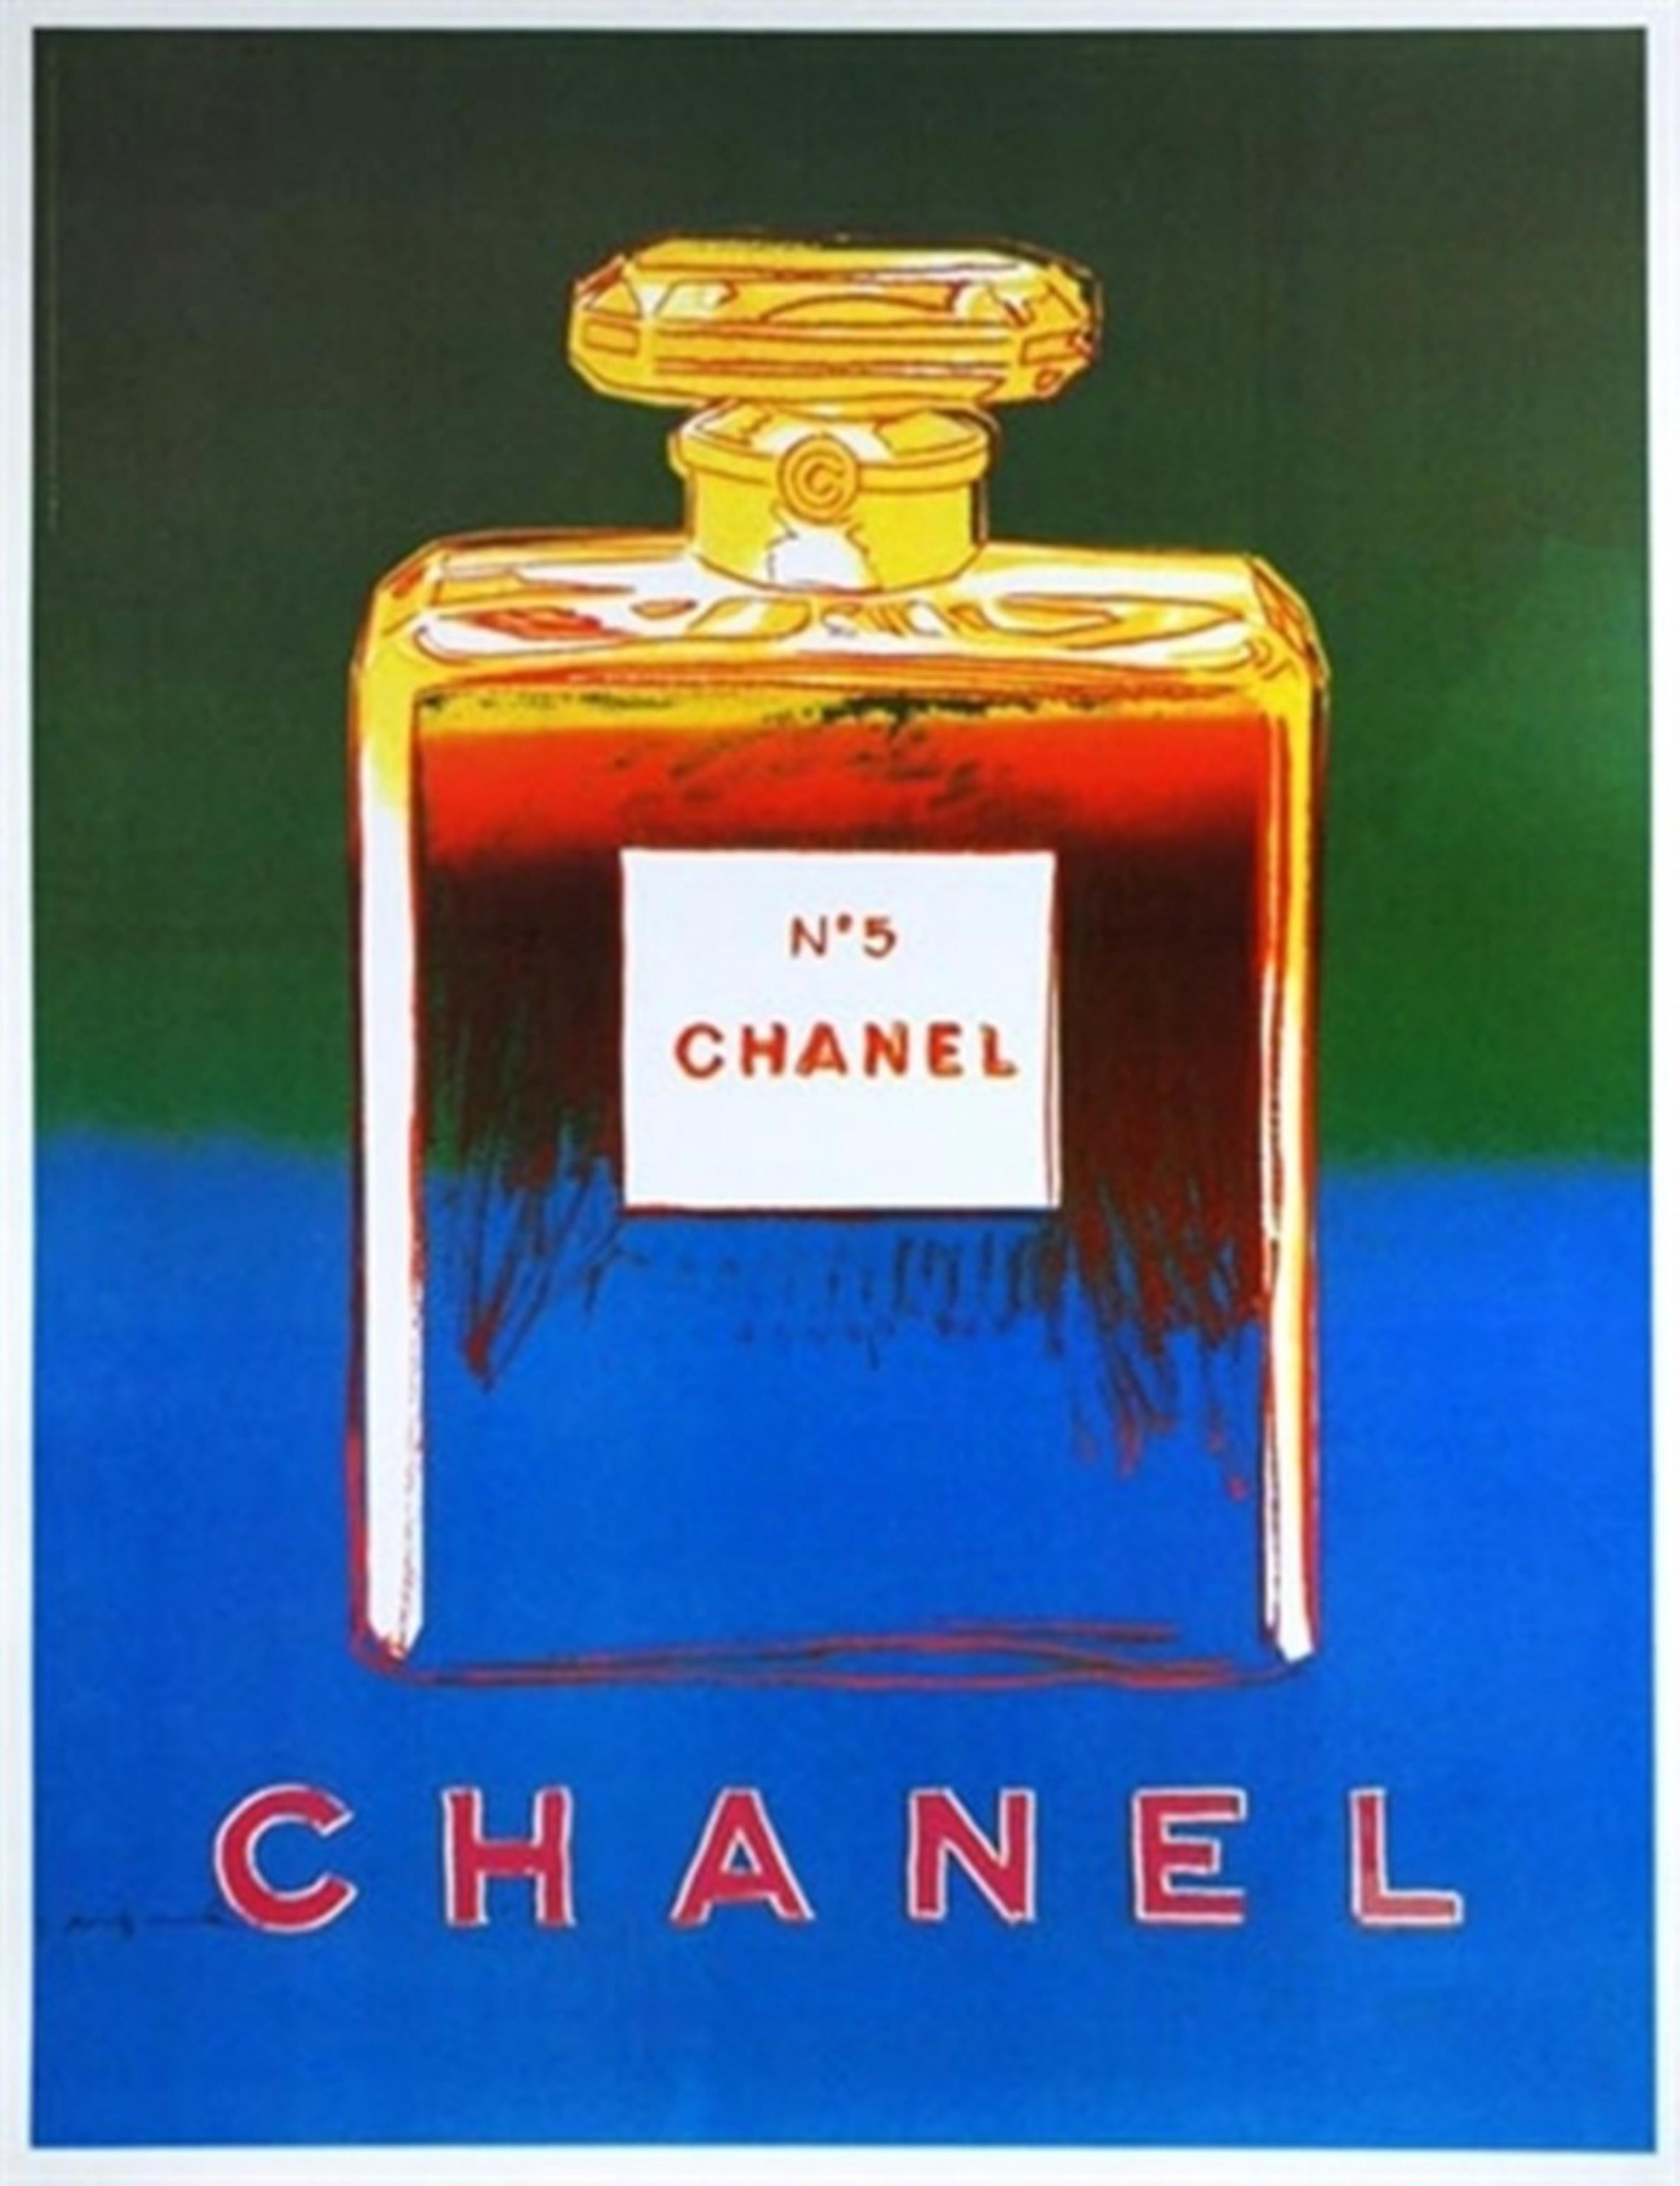 Nach Andy Warhol
Chanel No. 5 (Suite von vier einzelnen (separaten) Drucken auf Leinen), 1996
Suite von vier (4) separaten individuellen Offset-Lithographien in limitierter Auflage in Farben auf Velinpapier, das auf einer eleganten dünnen